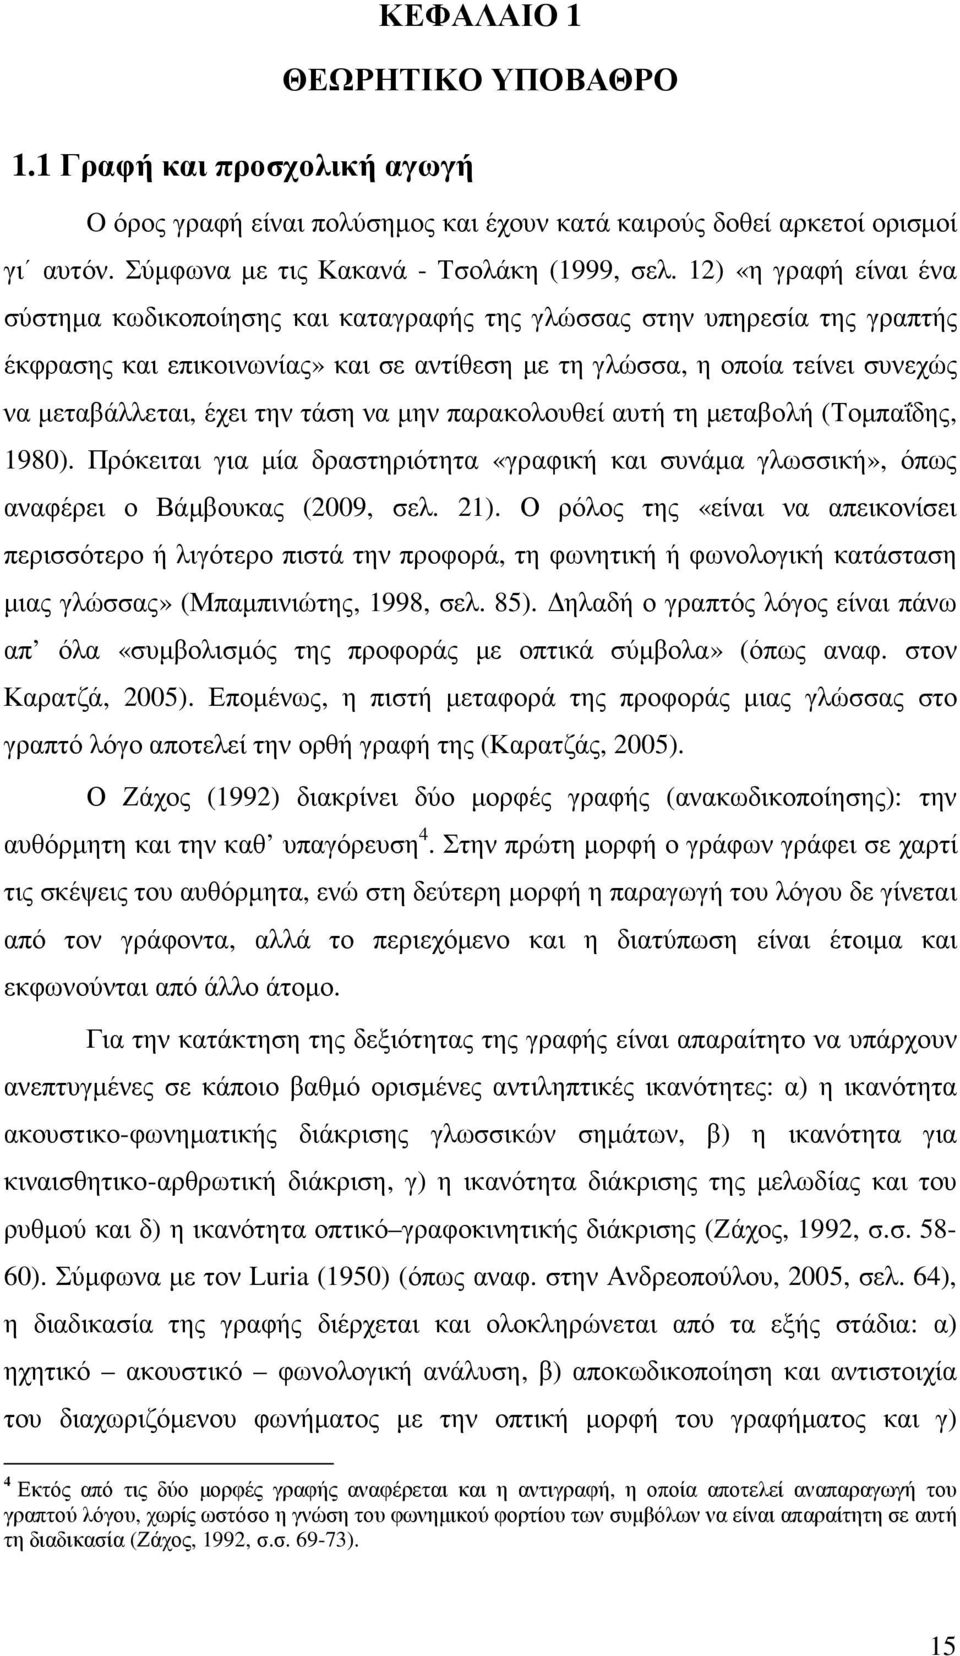 την τάση να µην παρακολουθεί αυτή τη µεταβολή (Τοµπαΐδης, 1980). Πρόκειται για µία δραστηριότητα «γραφική και συνάµα γλωσσική», όπως αναφέρει ο Βάµβουκας (2009, σελ. 21).